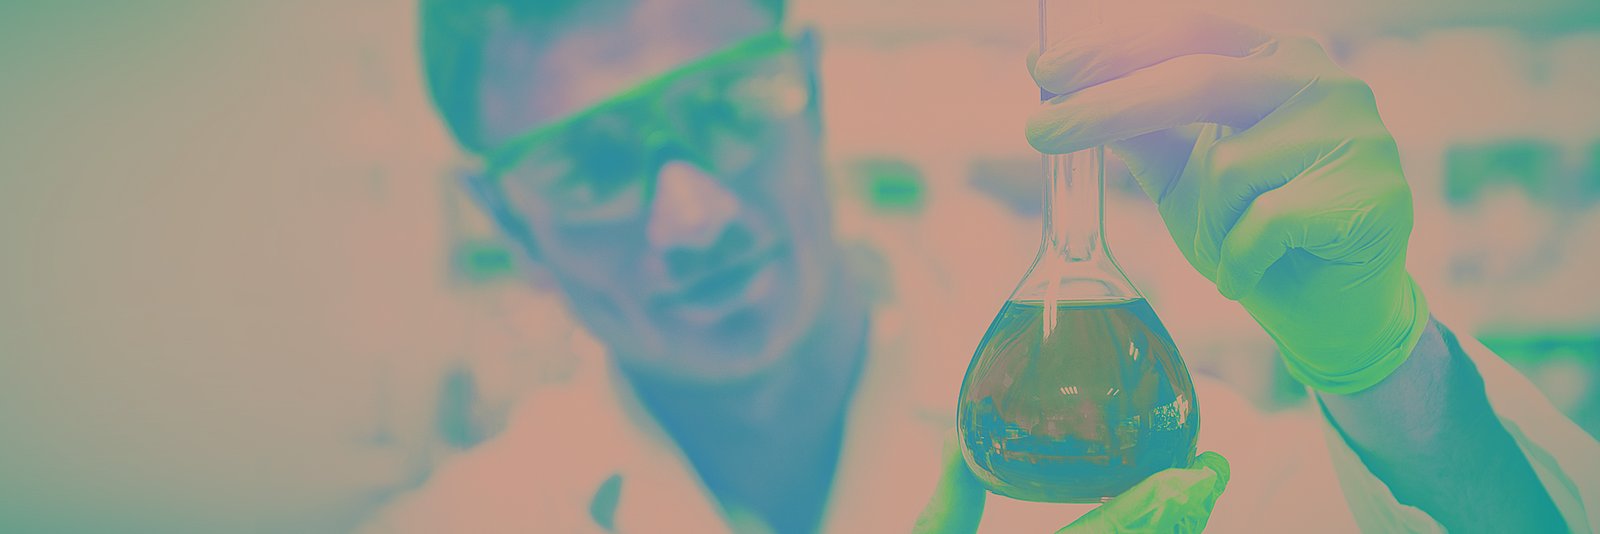 Chemikant mit Sicherheitsbrille, und Handschuhen, der ein mit einer grünen Flüssigkeit gefülltes Glas hält